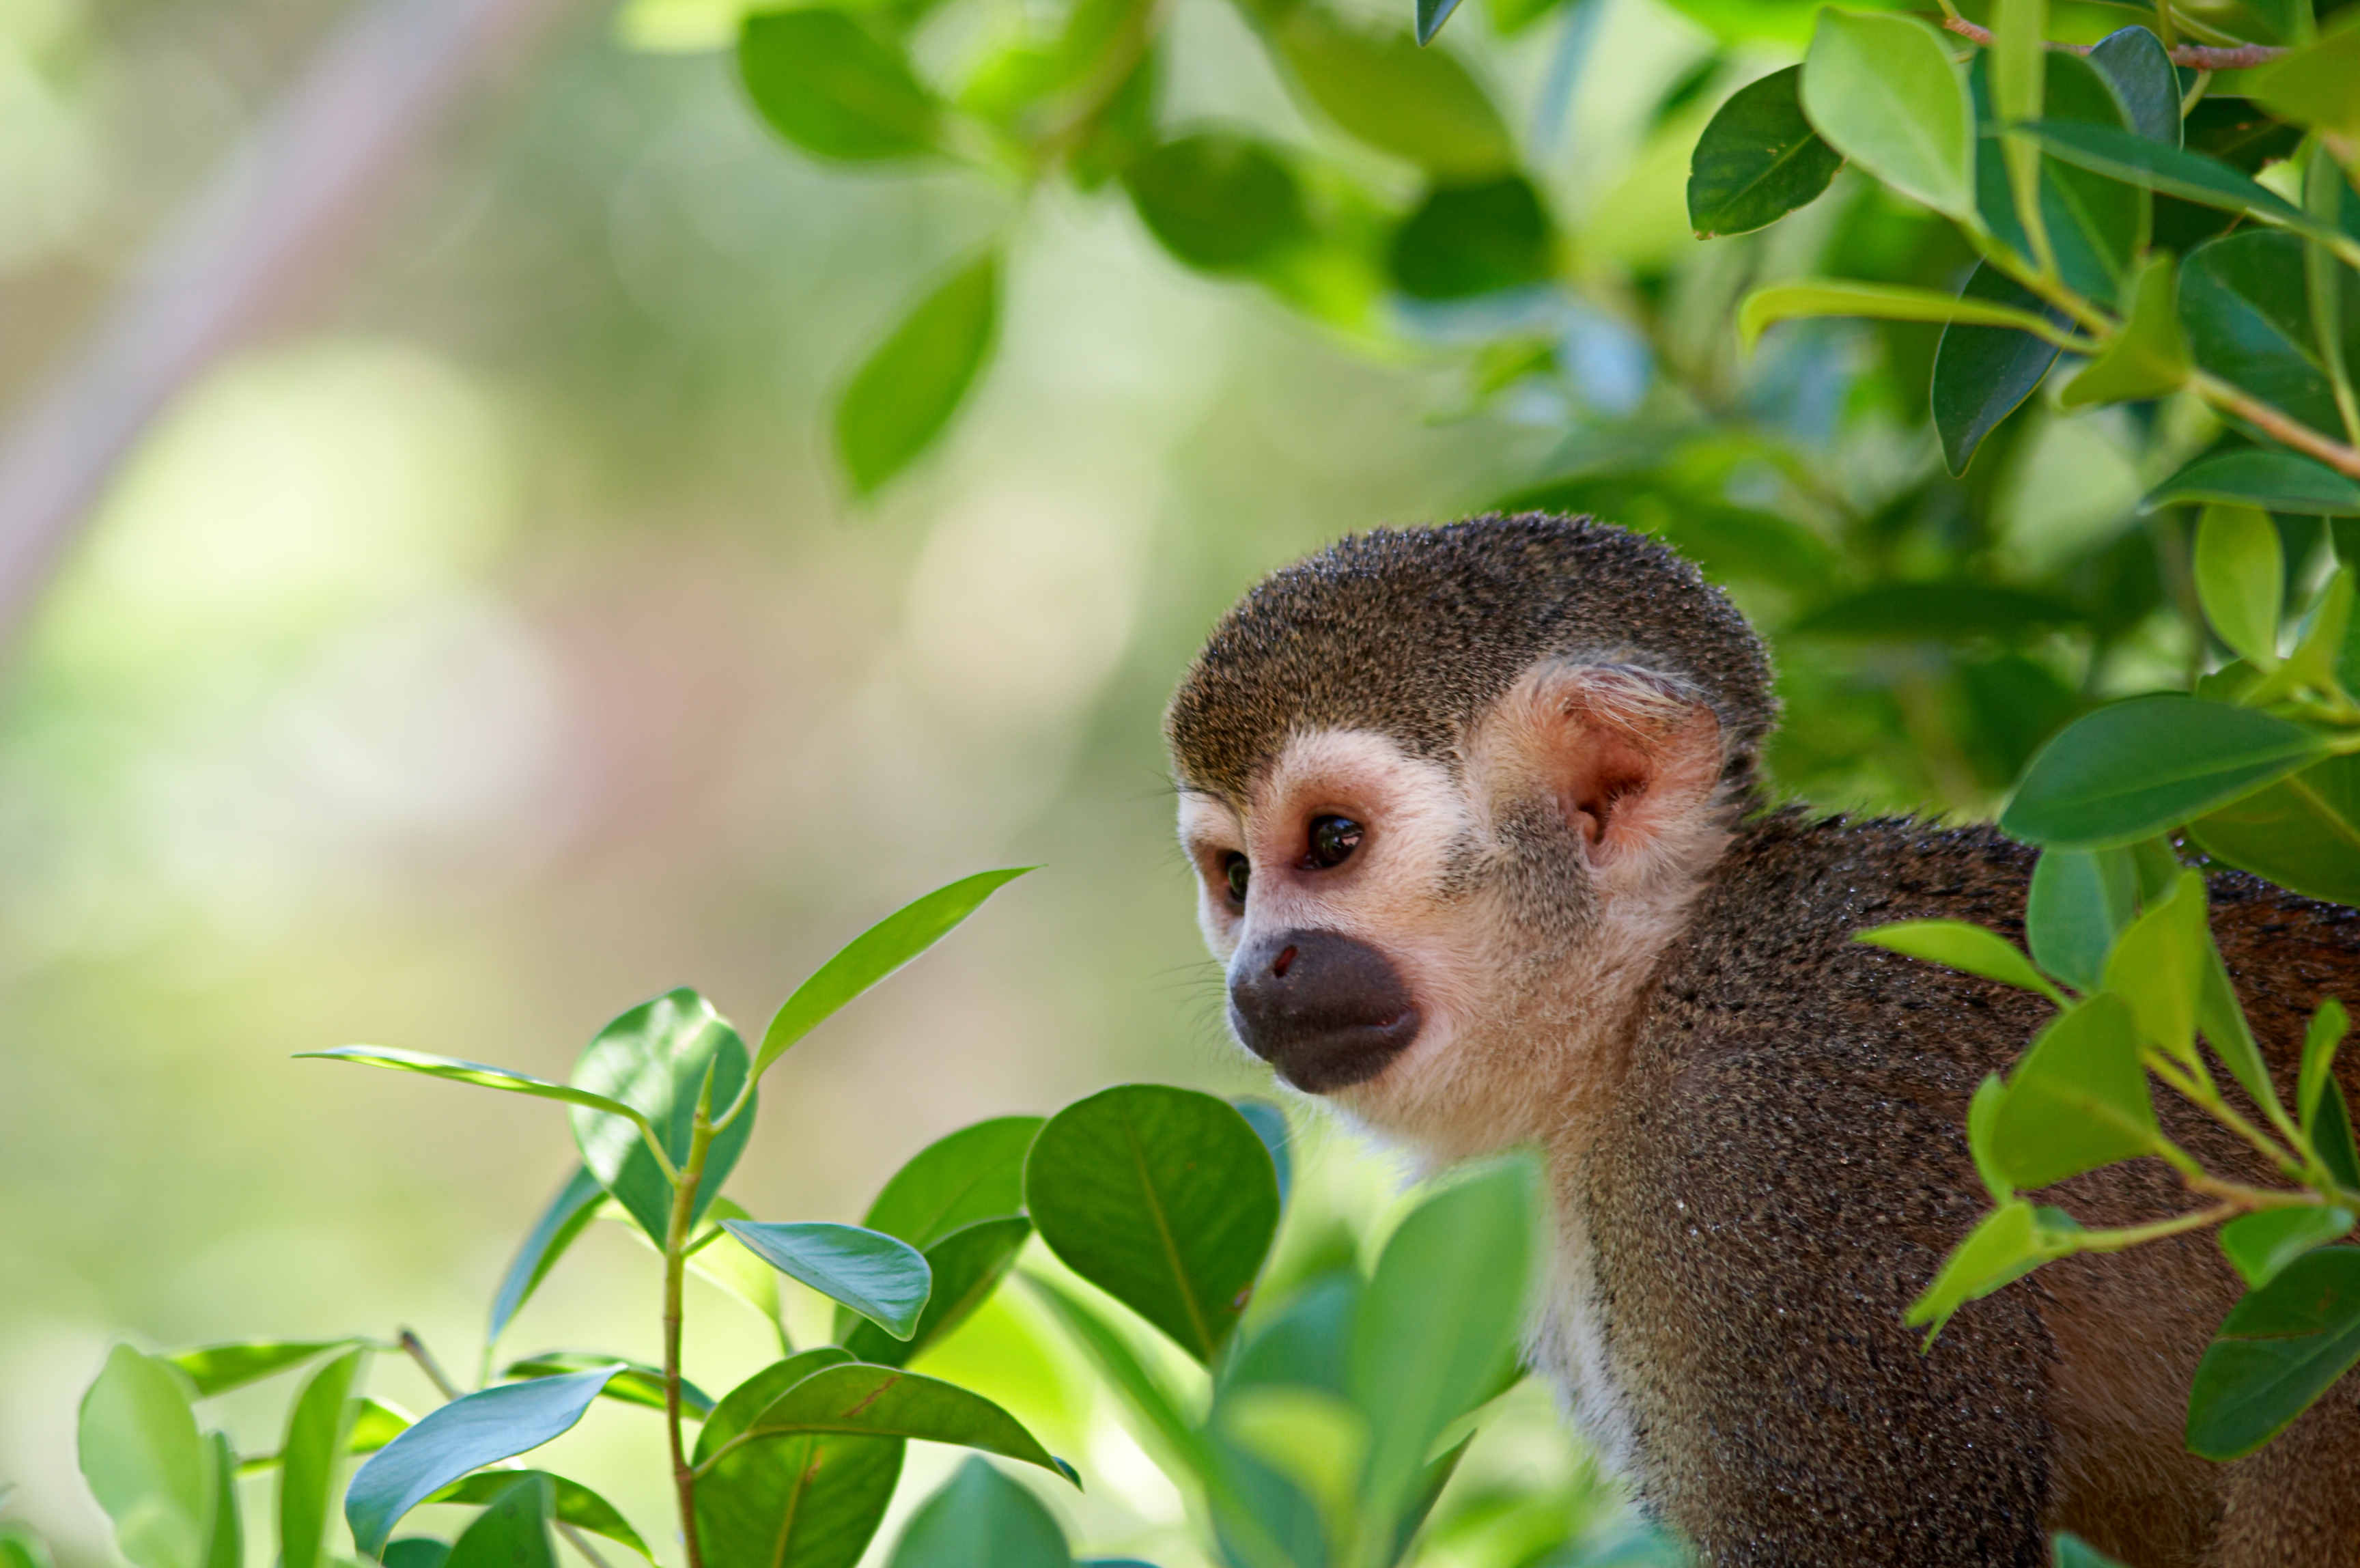 Squirrel monkey sitting on a tree